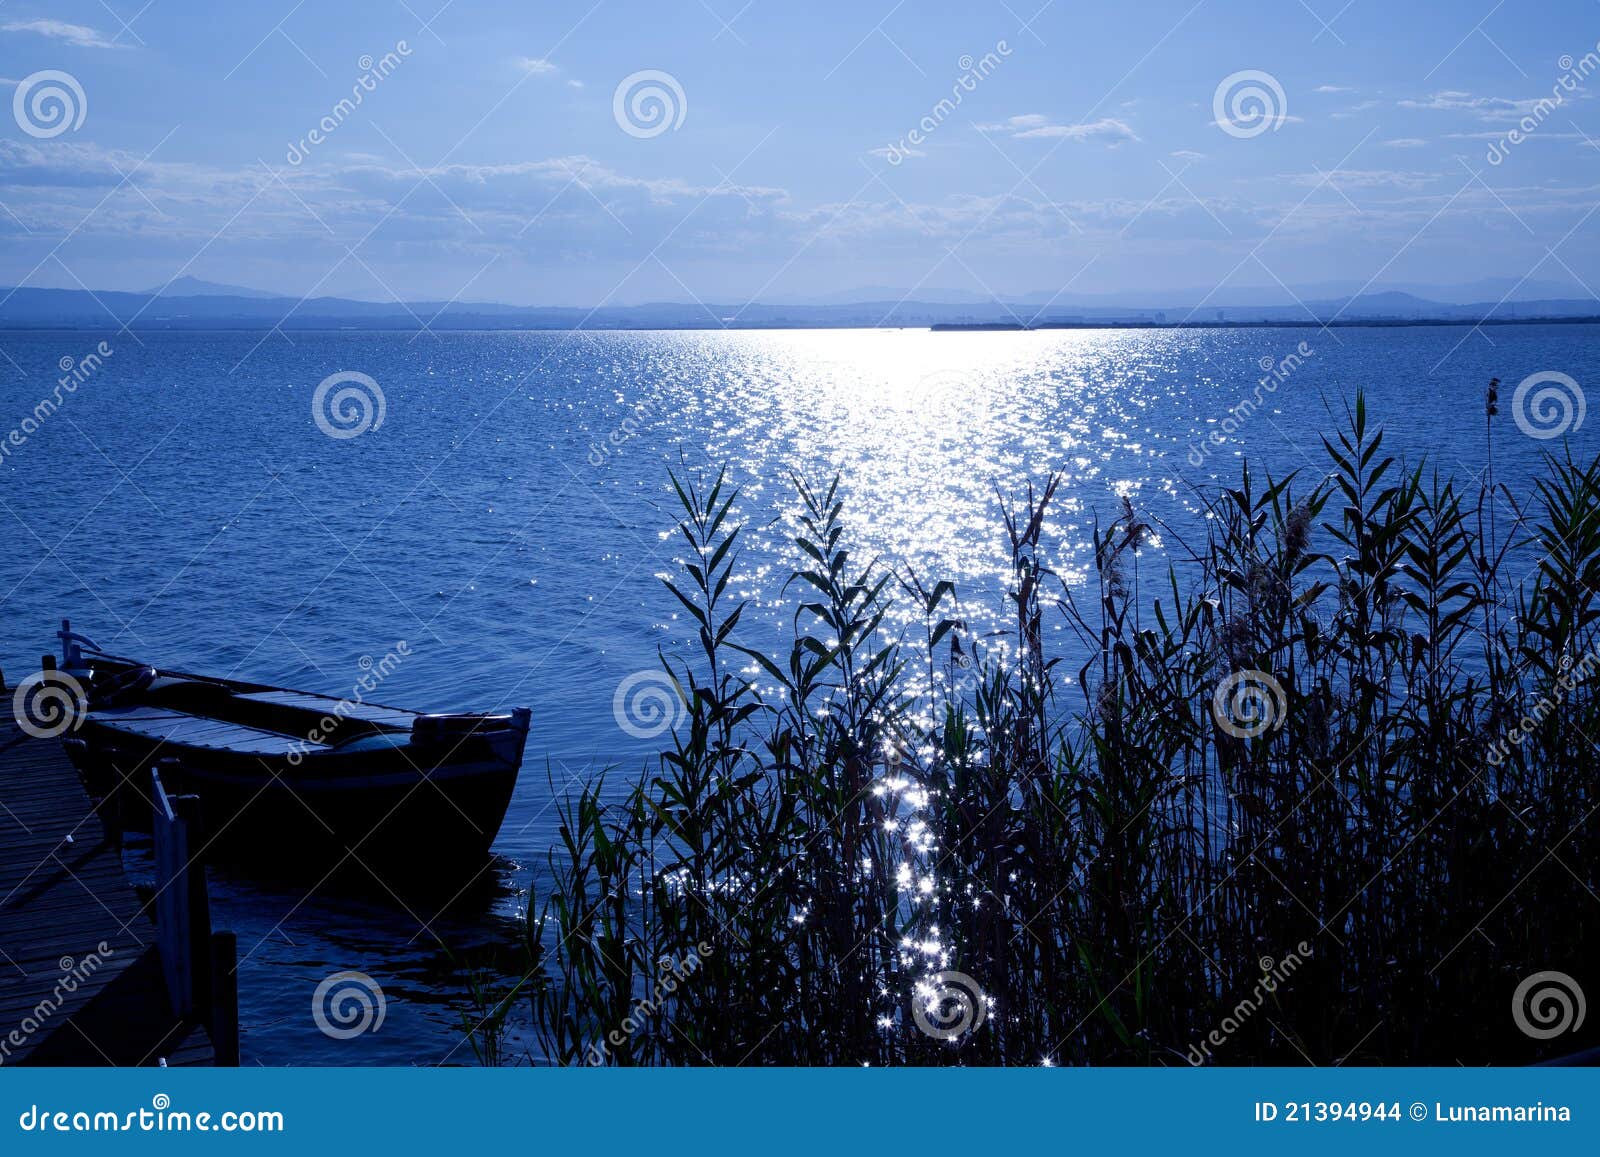 albufera blue boats lake in el saler valencia